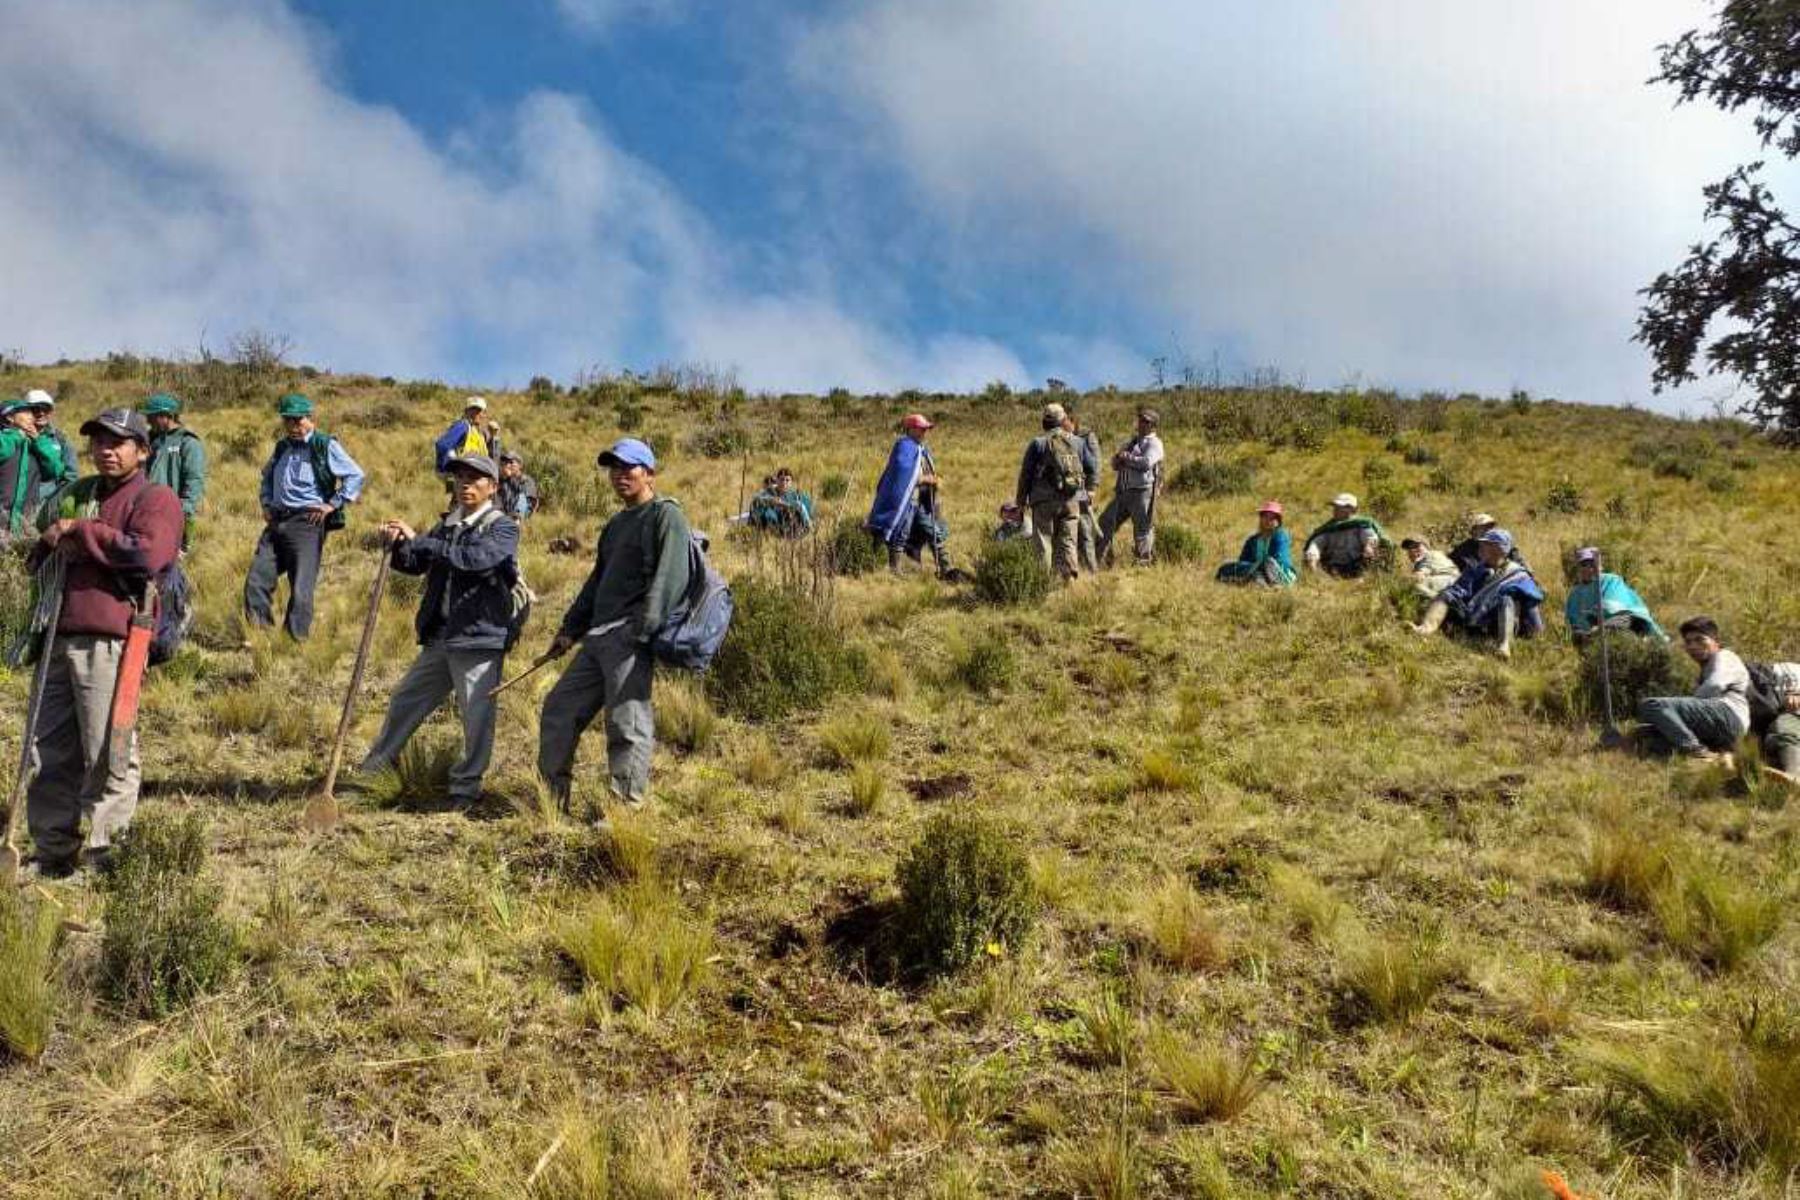 Más de 120 agricultores de la comunidad campesina de Quispampa, ubicada en la provincia de Huancabamba, iniciaron los trabajos de preparación de terrenos y apertura de hoyos para la siembra de plantones de pino patula, que serán instalados en aproximadamente 45 hectáreas de tierras comunales en las zonas altas de la región.